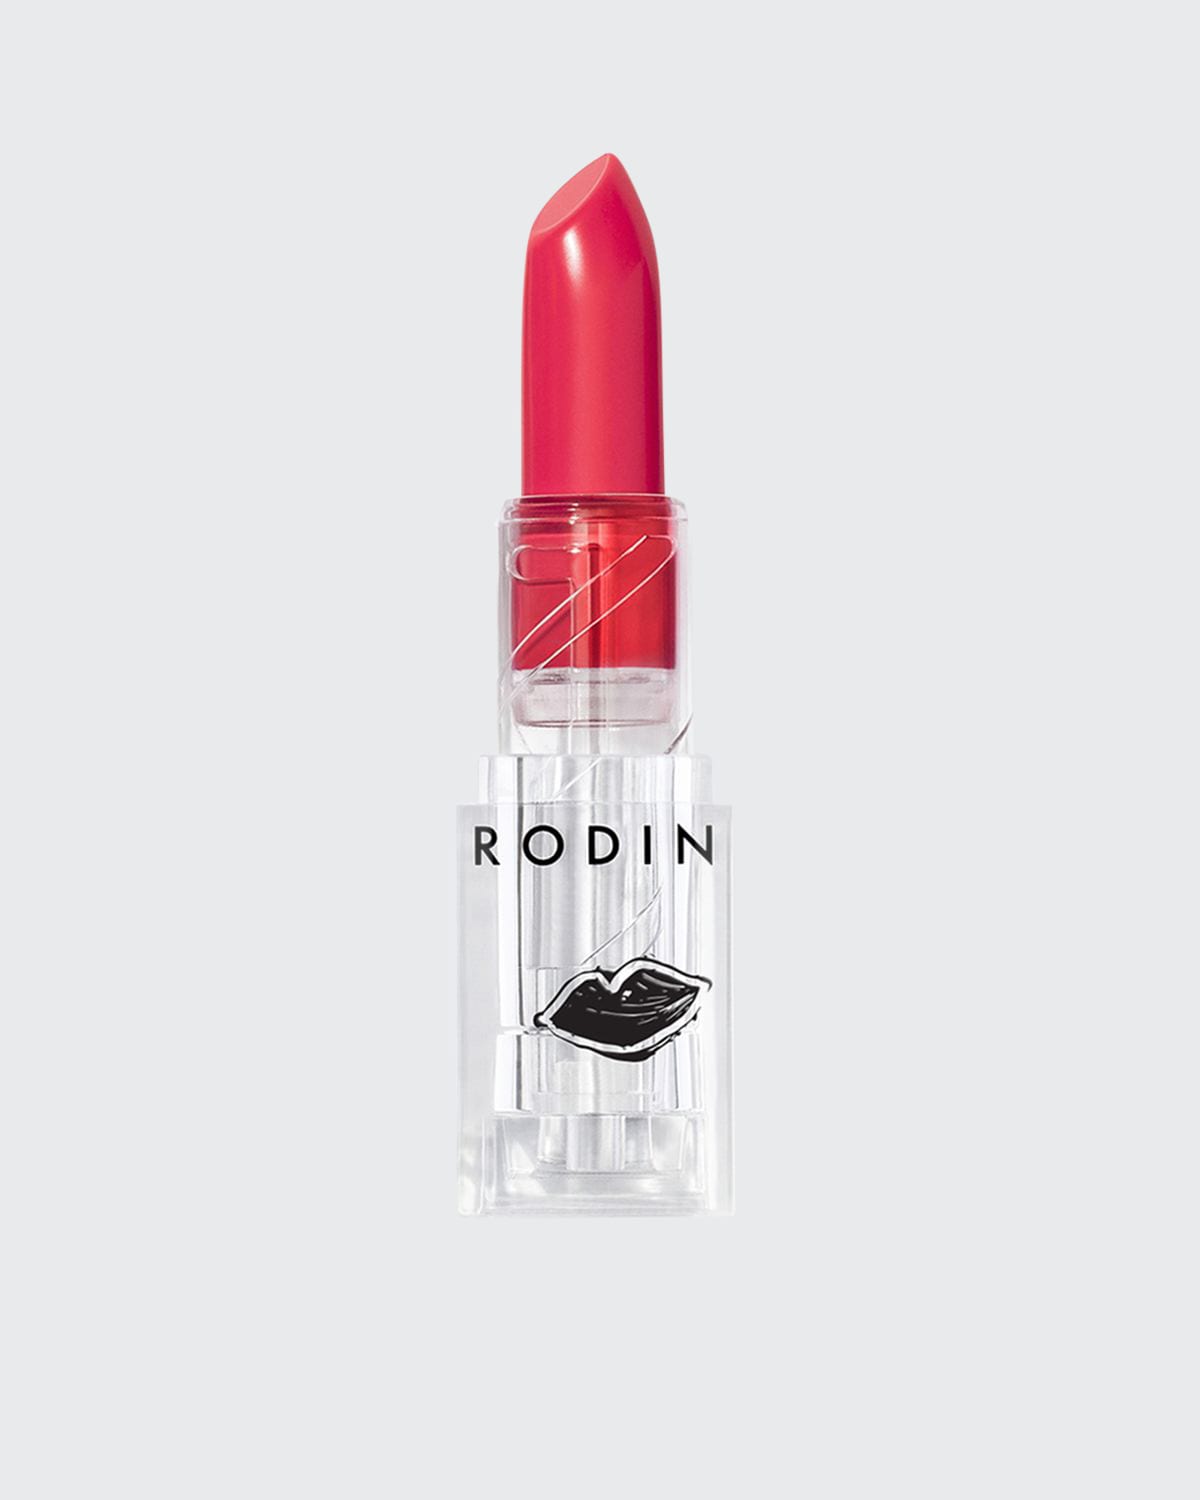 Rodin Olio Lusso Goddess Aurora Collection Luxury Lipstick In Arancia Adore